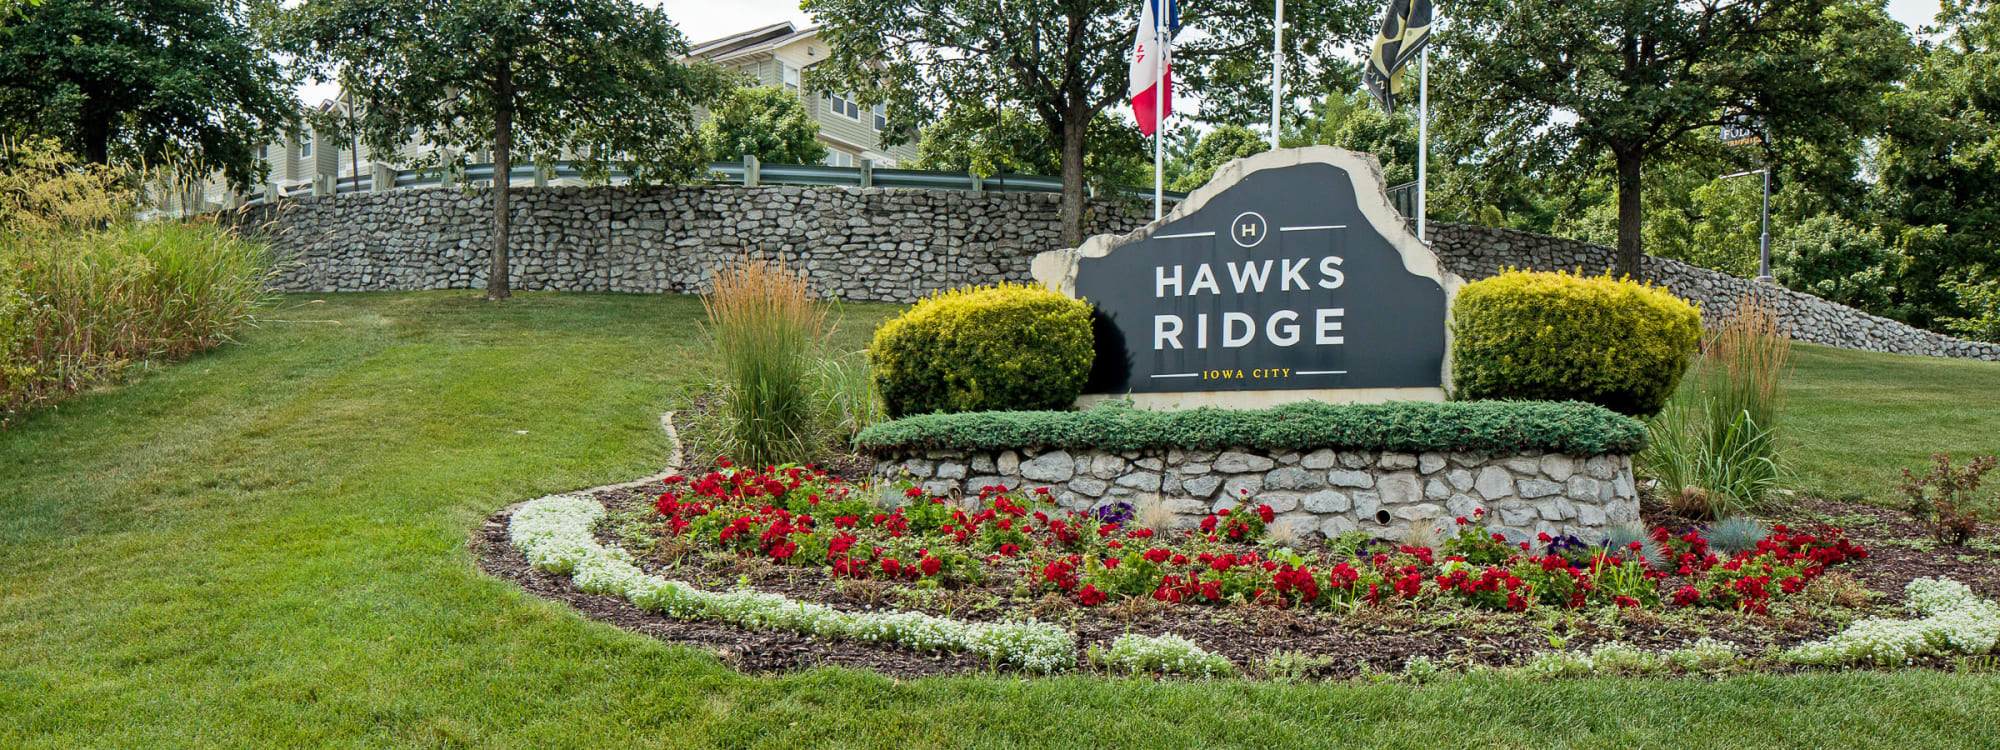 Welcome sign at Hawks Ridge in Iowa City, Iowa